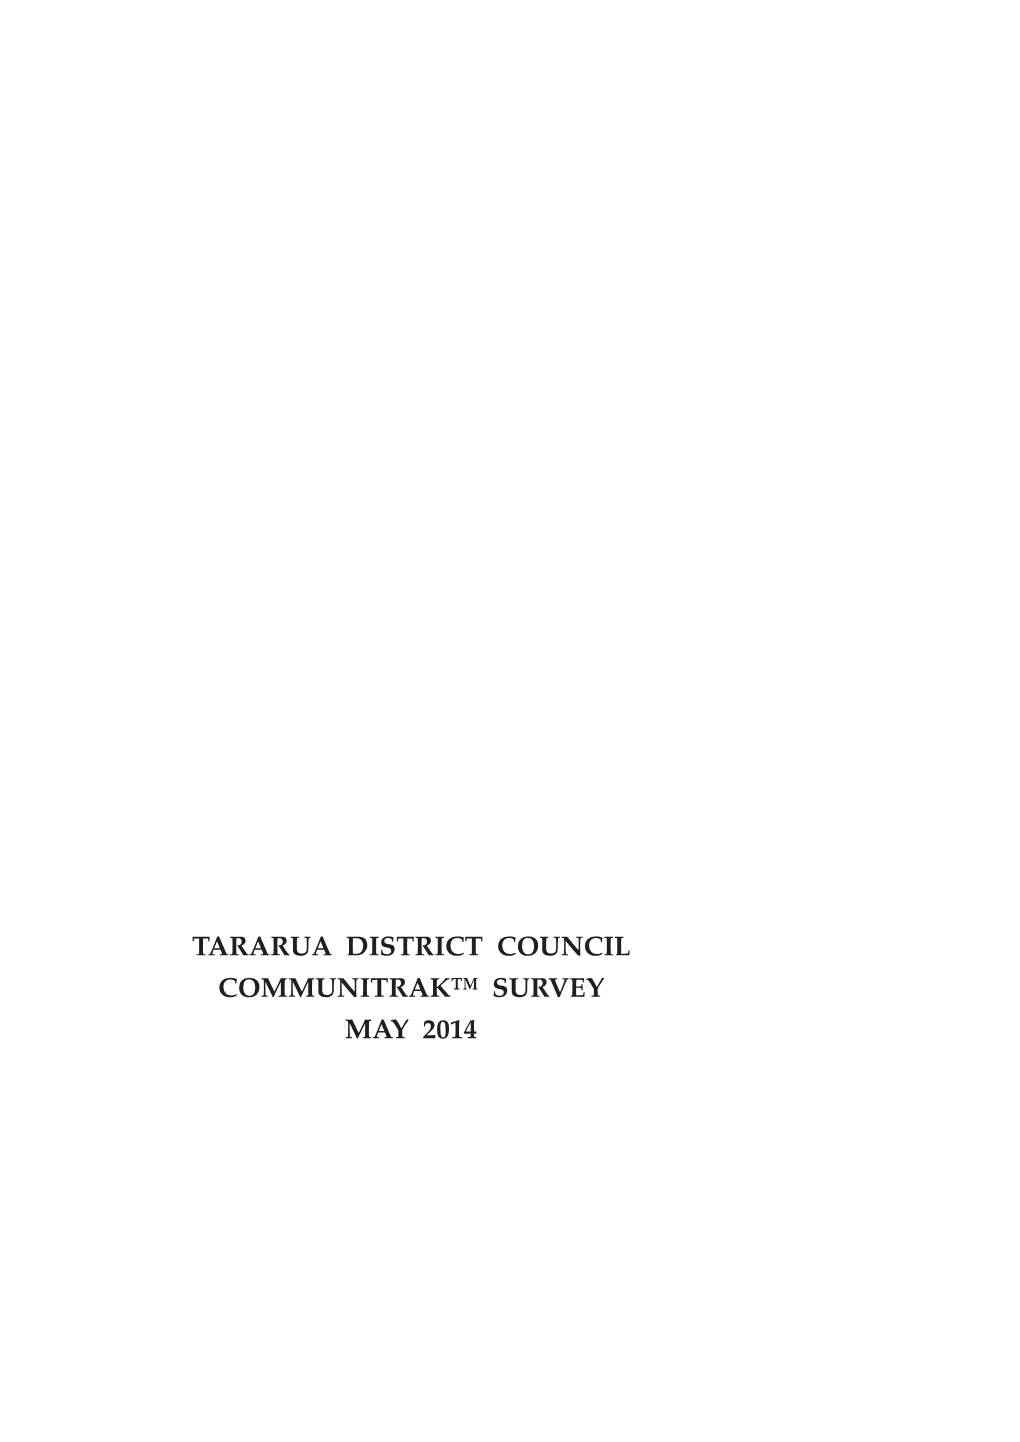 Tararua District Council Communitrak™ Survey May 2014